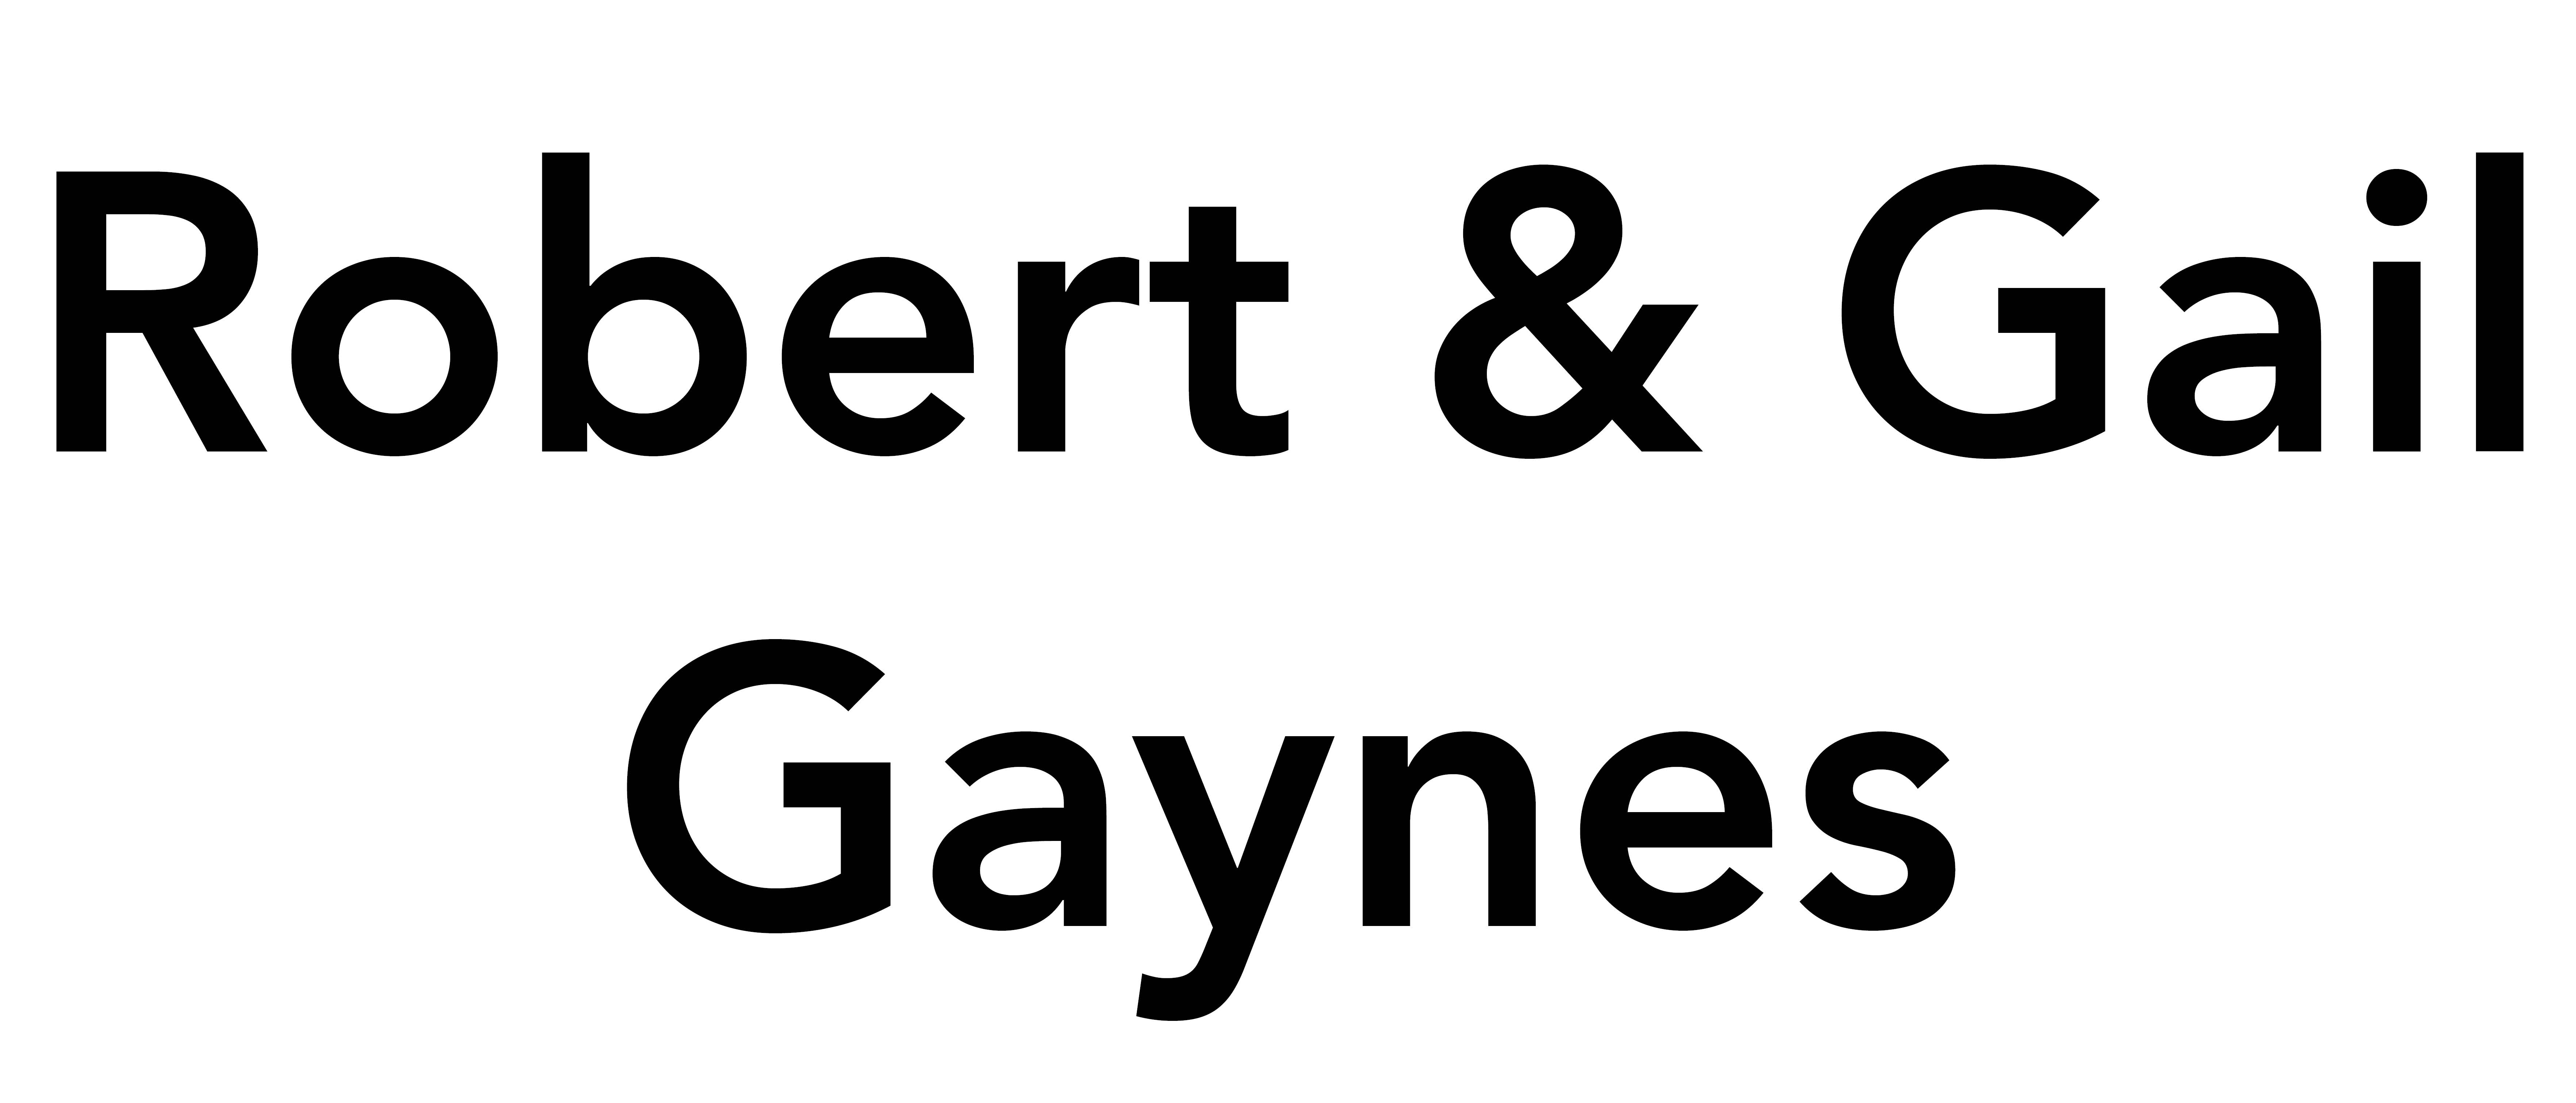 Robert & Gail Gaynes